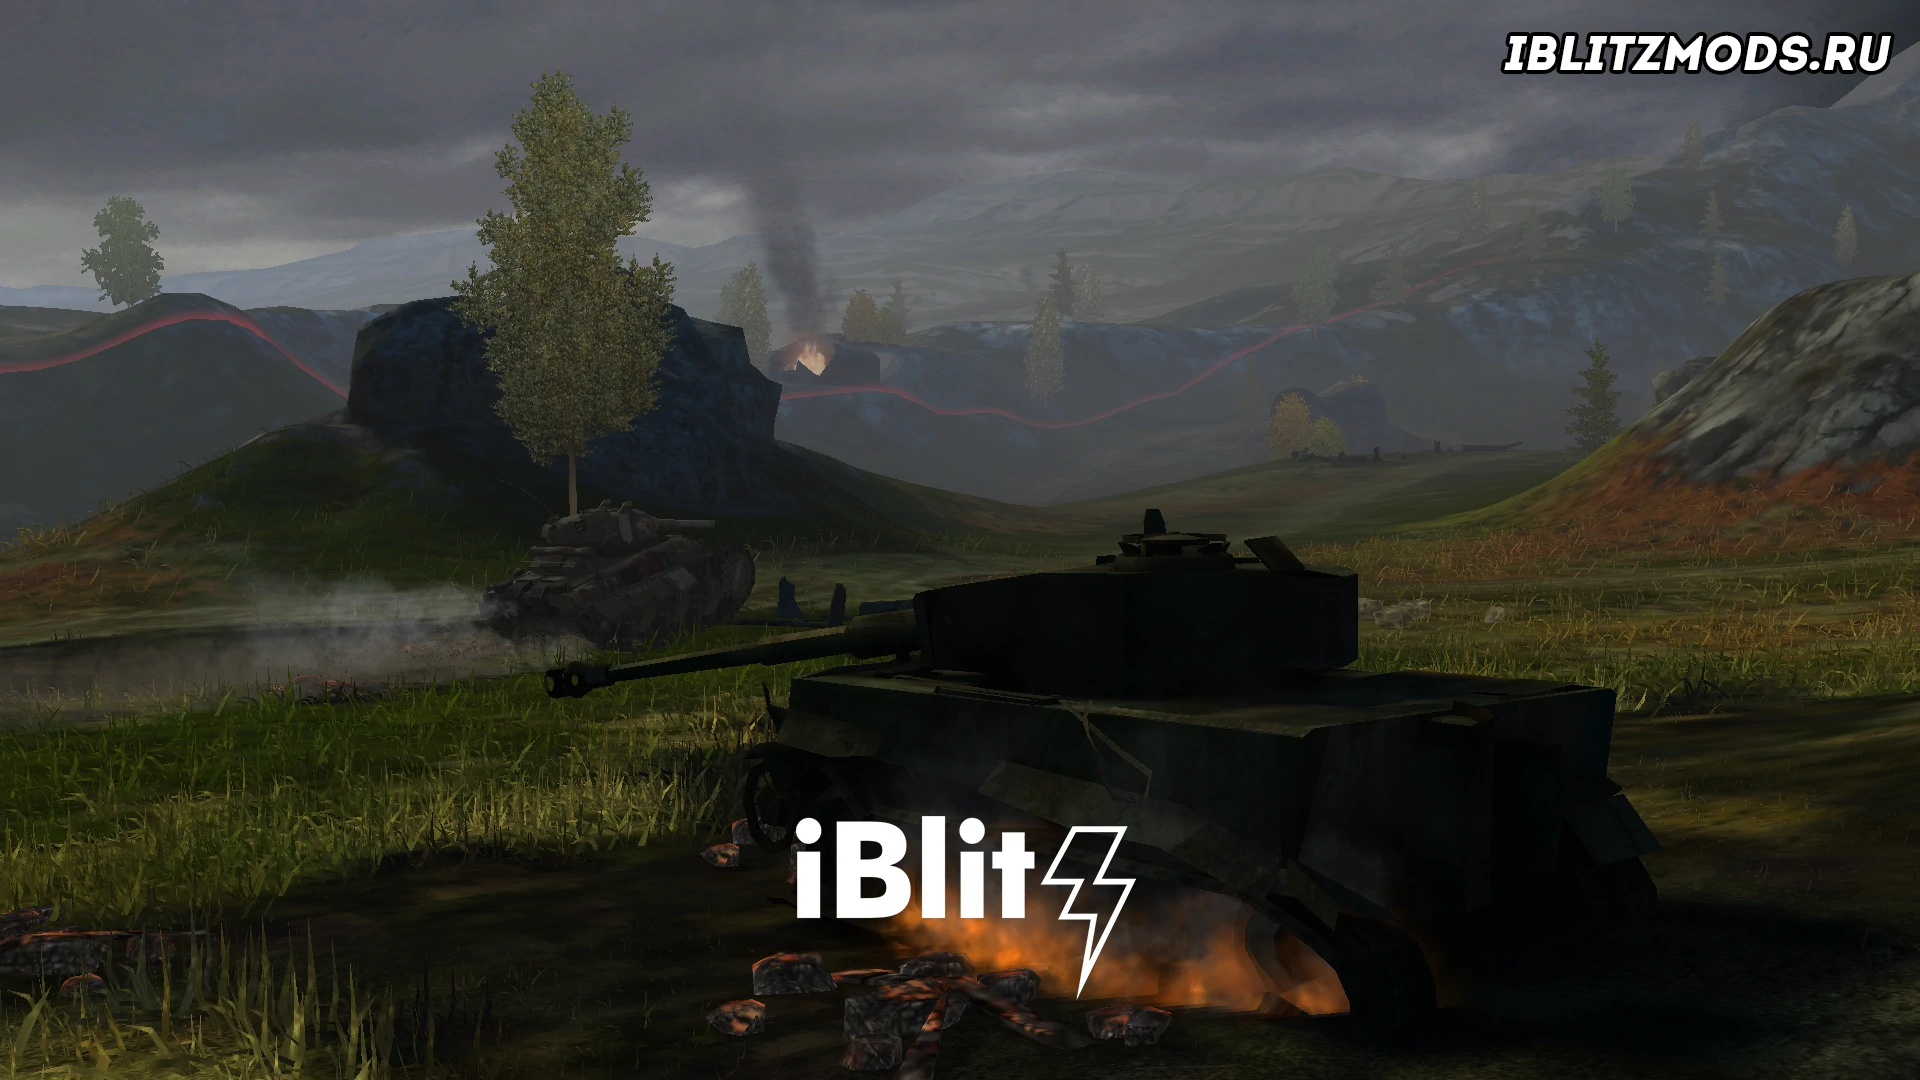 Скачать бесплатно мод на ремоделинг карты Вечерний Балтийский щит для World of Tanks Blitz от iBlitz. Карта Балтийский щит выполнена в вечрнем и мрачном стиле.